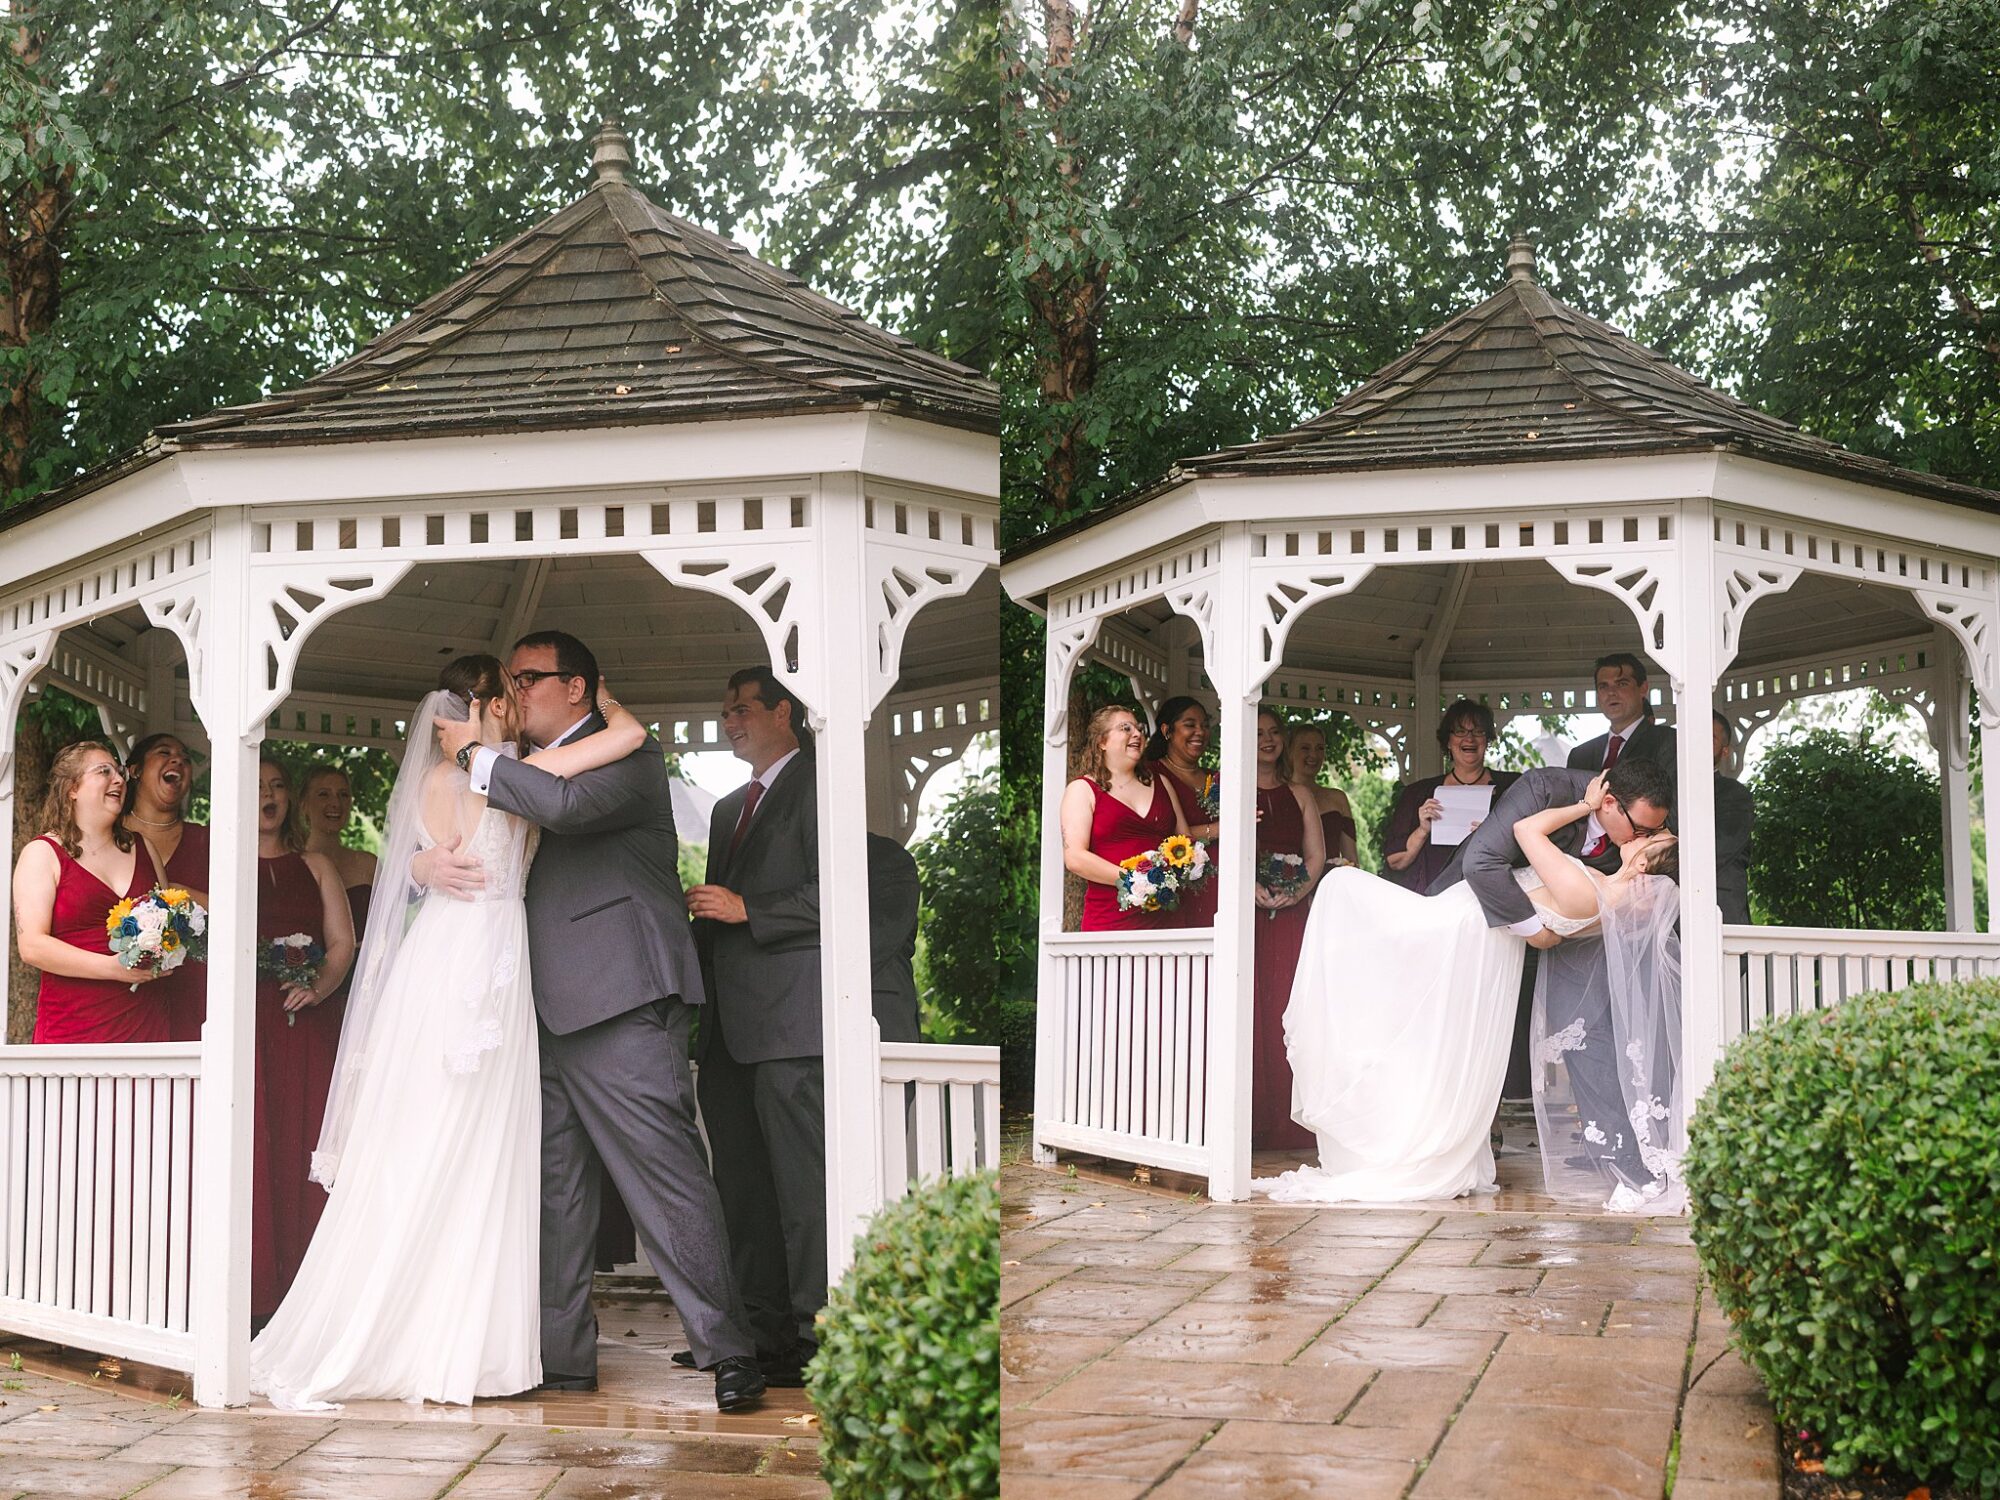 rainy wedding day outdoor ceremony